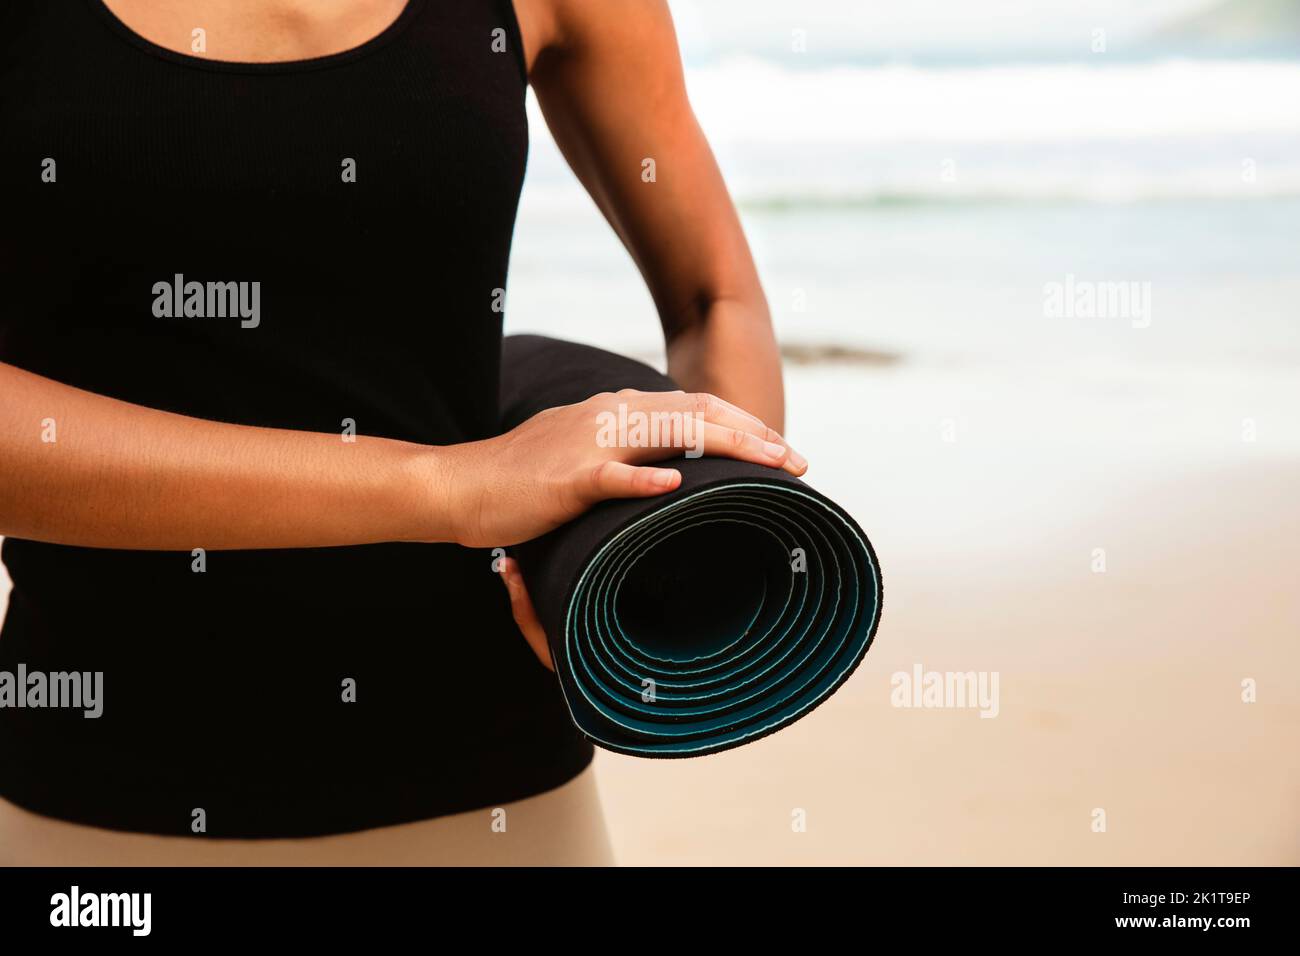 Mujer en la suite de deporte llevar colchón de yoga en la playa, Sport background.Healthy Lifestyle y viajes. Equipamiento deportivo femenino Foto de stock